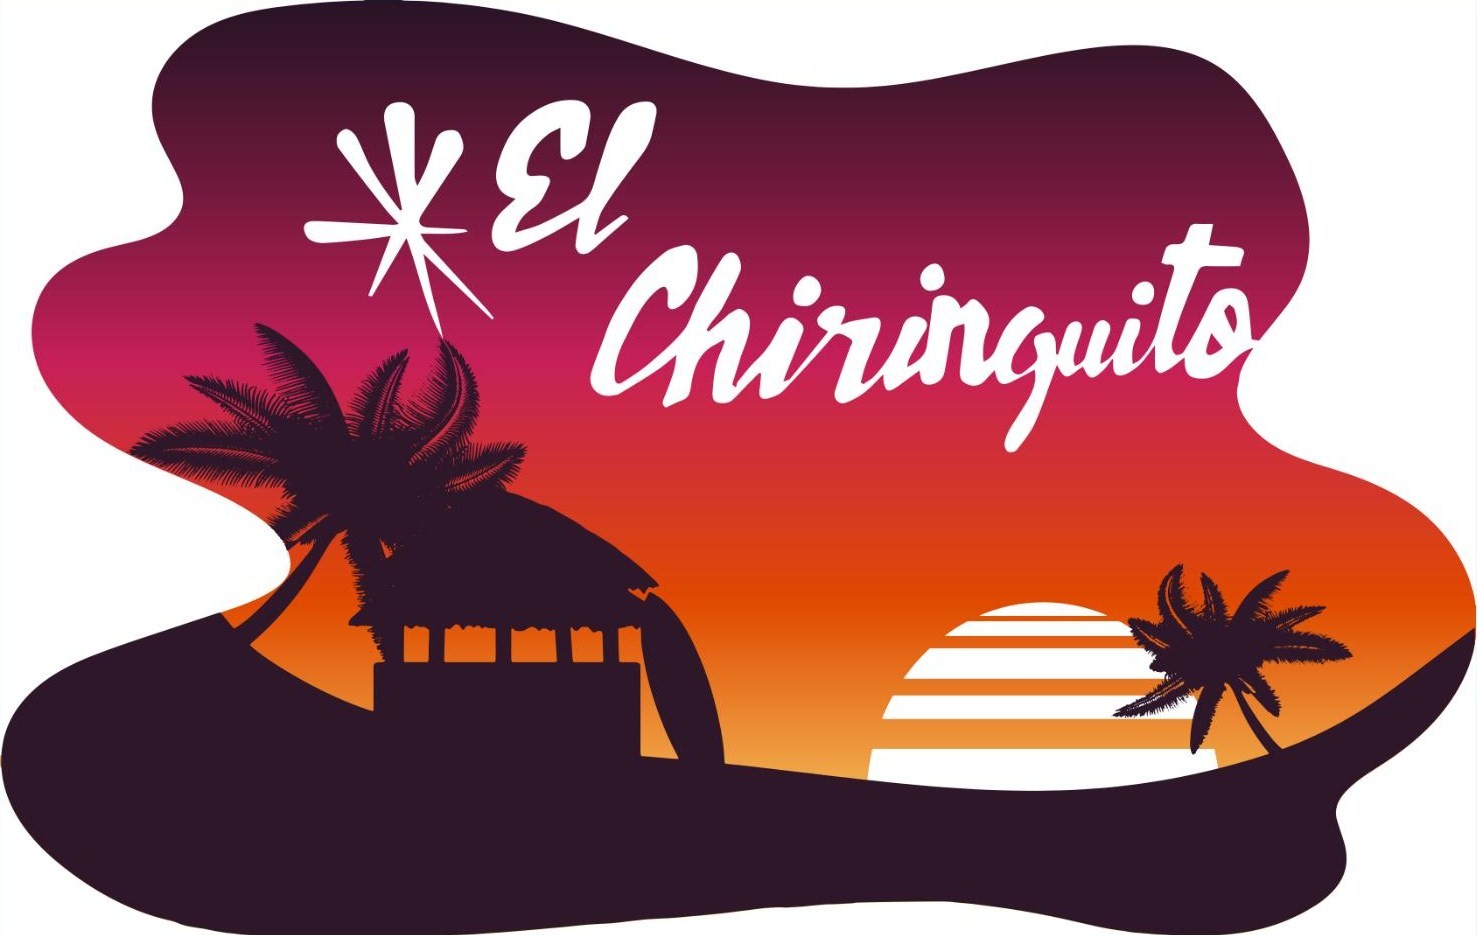 EL CHIRINGUITO